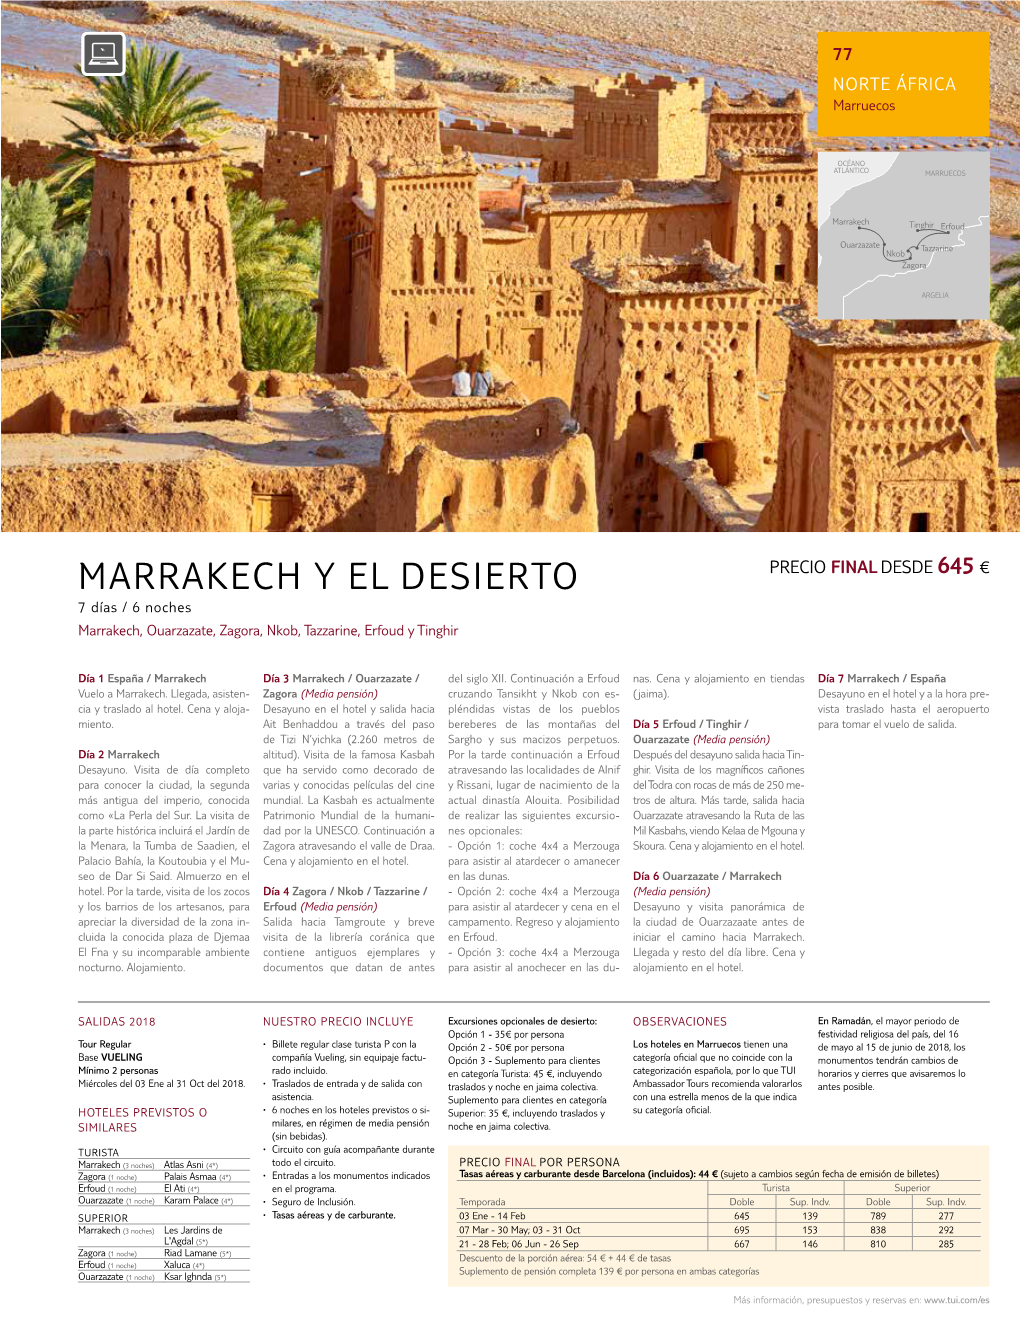 MARRAKECH Y EL DESIERTO Precio Final Desde 645 € 7 Días / 6 Noches Marrakech, Ouarzazate, Zagora, Nkob, Tazzarine, Erfoud Y Tinghir